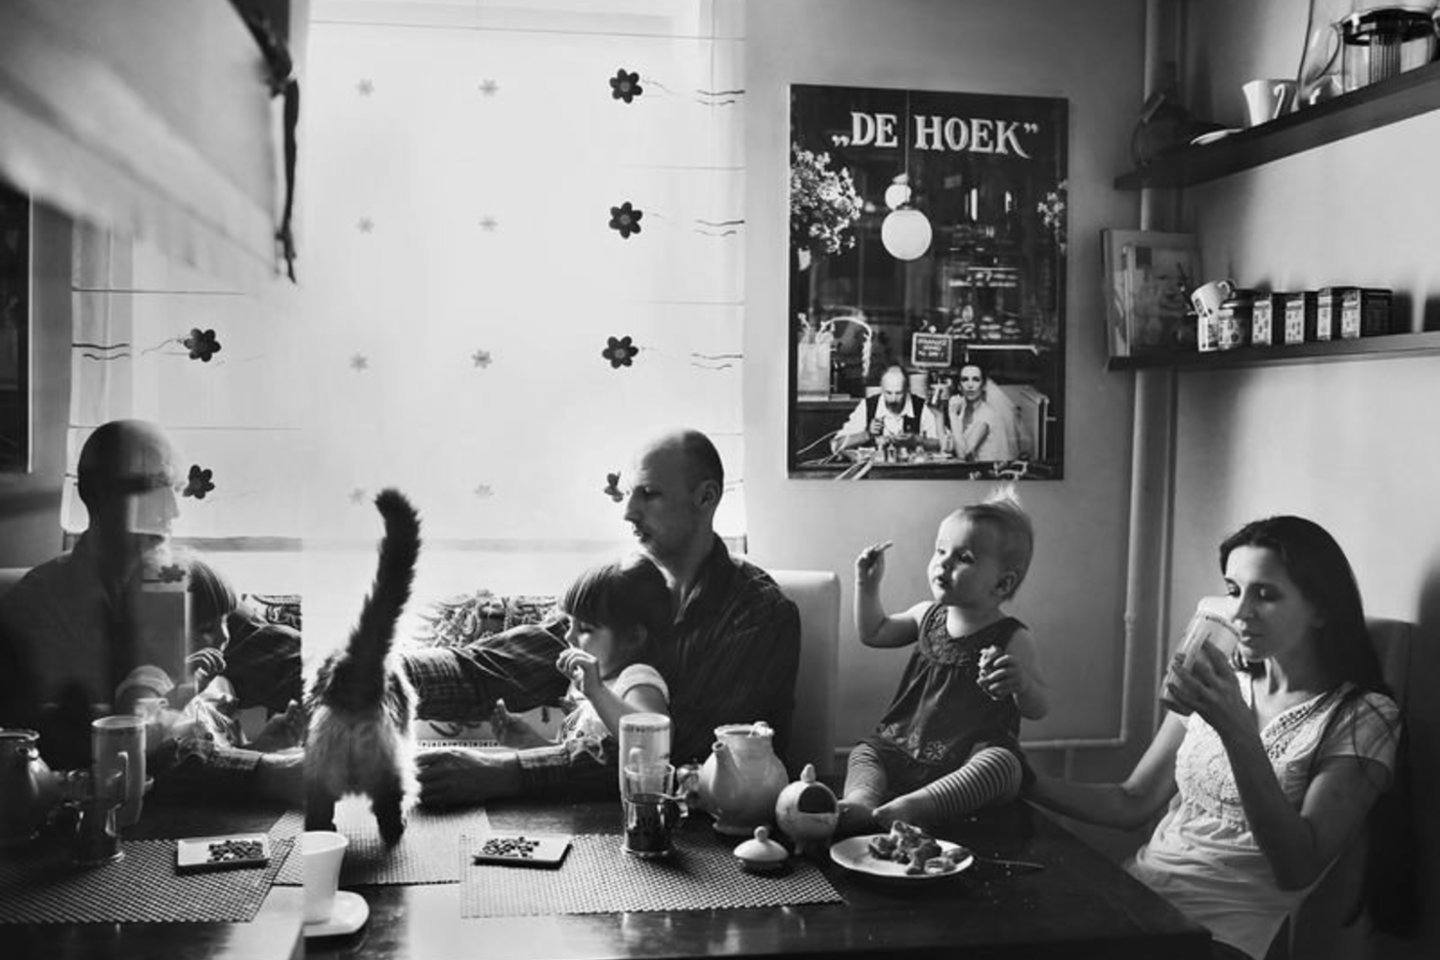 Klaipėdiečių Giedrės ir Andriaus šeimos pusryčiai namų virtuvėje. Gausi šeima, katinas, žuvų akvariumo stiklo atspindžiai, vaišės ant stalo, prieskoniai lentynėlėse. Ant sienos – vestuvinis pusryčiaujančių jaunavedžių portretas, kas rytą liudijantis augančios šeimos pusryčių ritualus.<br>Viktorijos Vaišvilaitės nuotr.